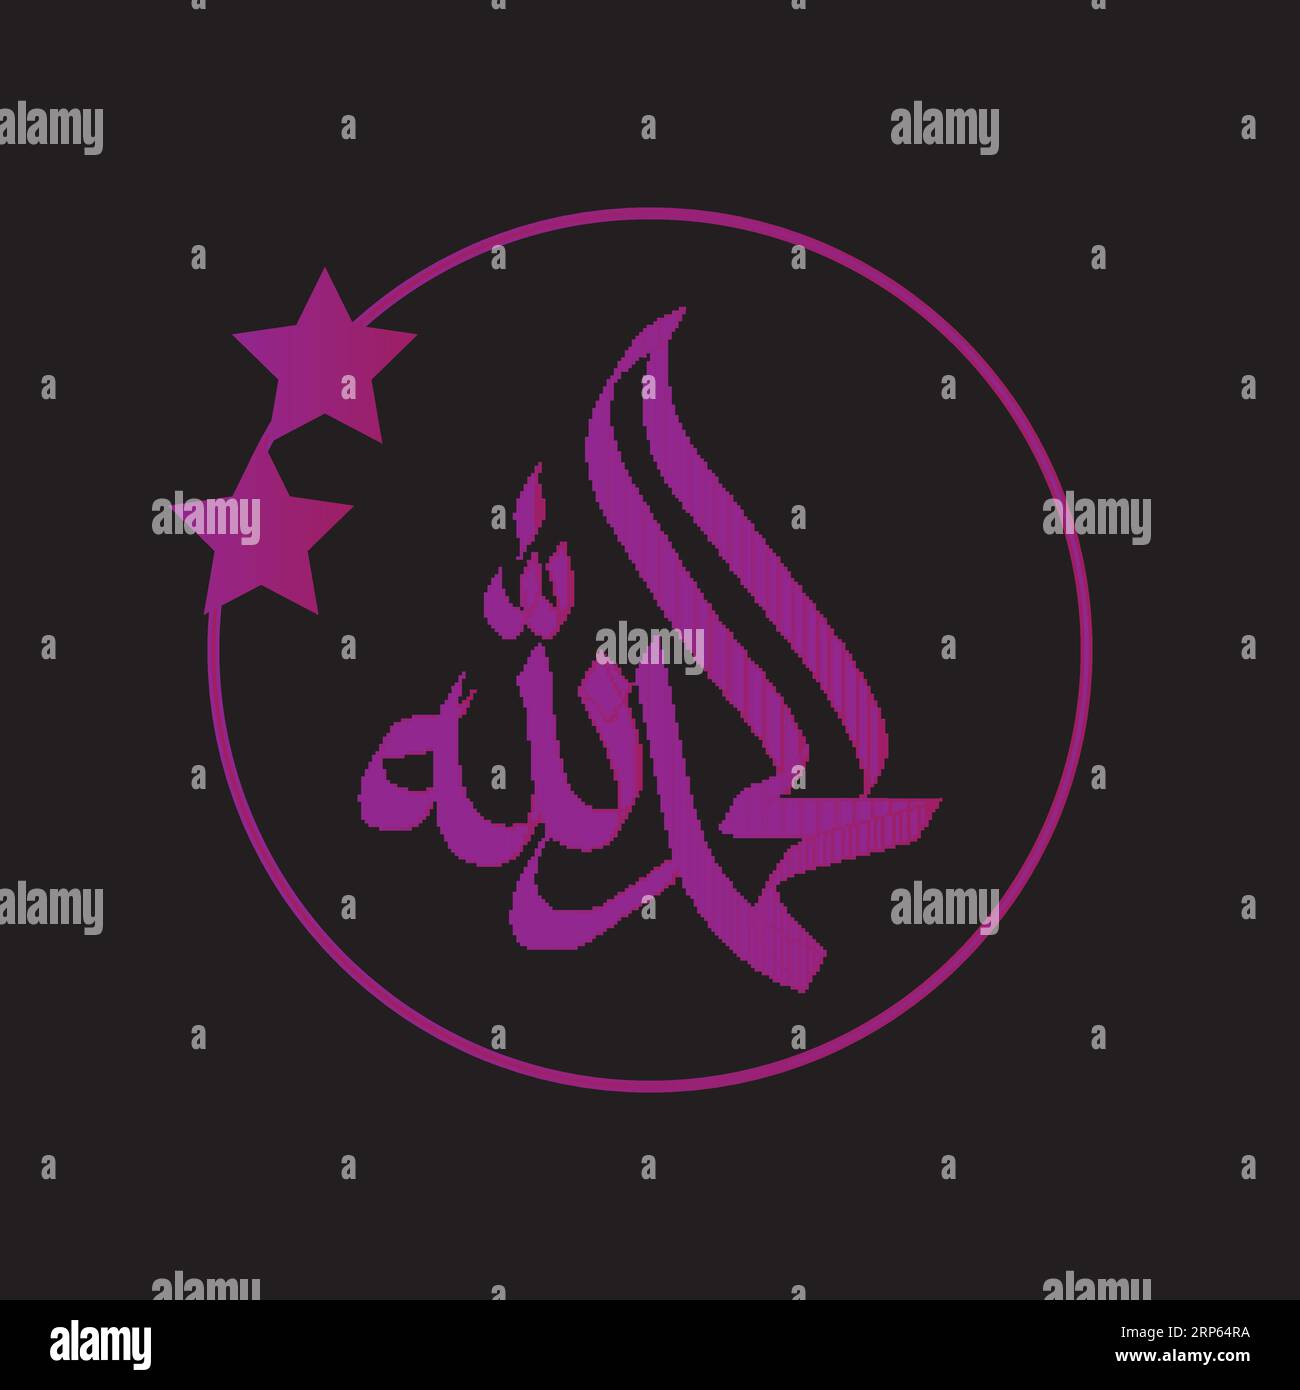 Calligraphie arabe Nom traduit 'Alhamdulillah' lettres arabes Alphabet police lettrage logo islamique illustration vectorielle Illustration de Vecteur